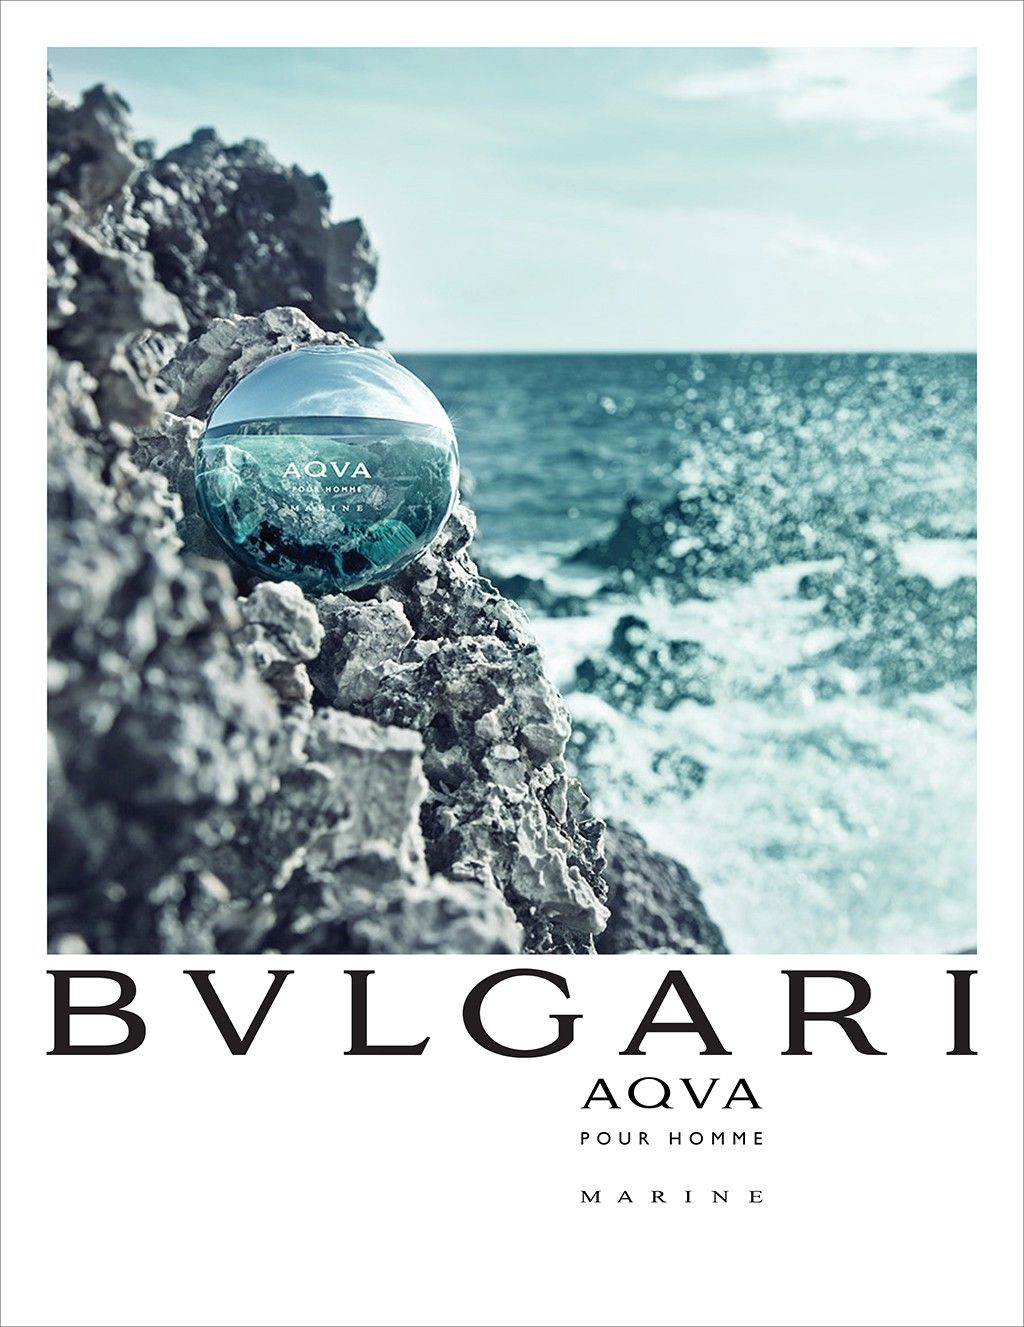 Bvlgari Aqva Marine น้ำหอมสำหรับสัตว์น้ำและมหาสมุทรที่ดีที่สุด